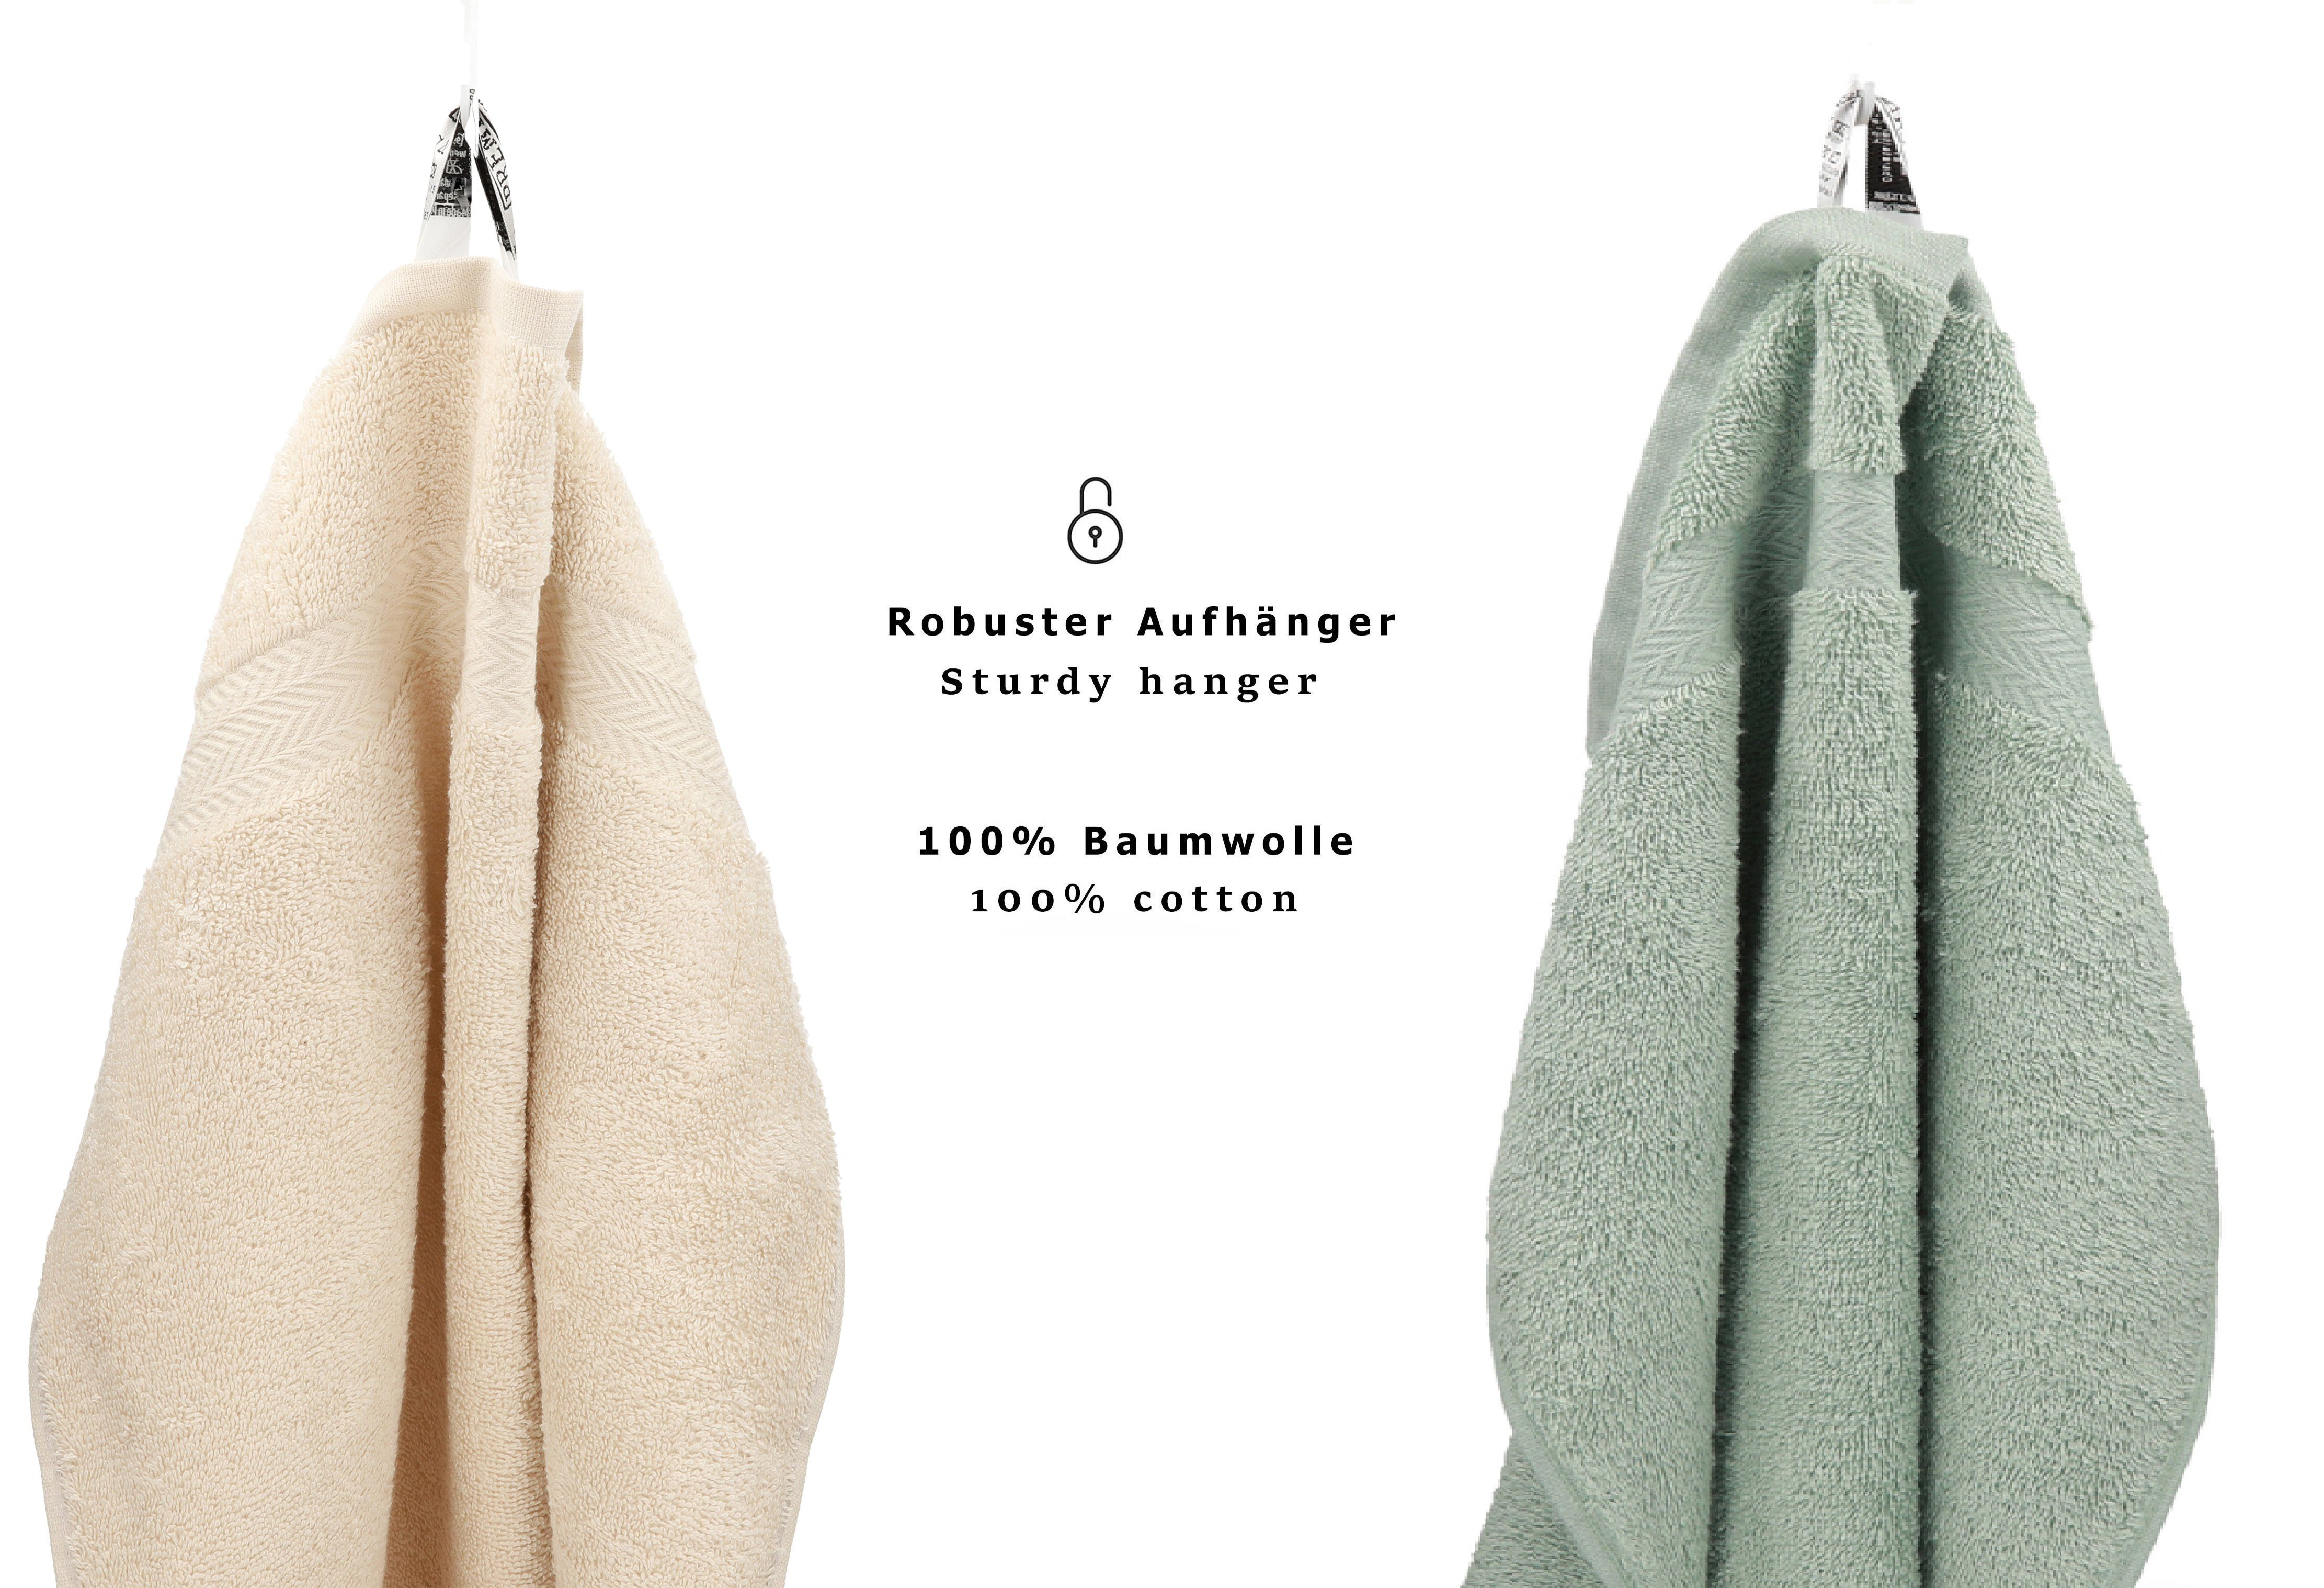 Betz Handtuch Set 12-tlg. Handtuch Baumwolle, 100% Premium Farbe Set Sand/heugrün, (12-tlg)